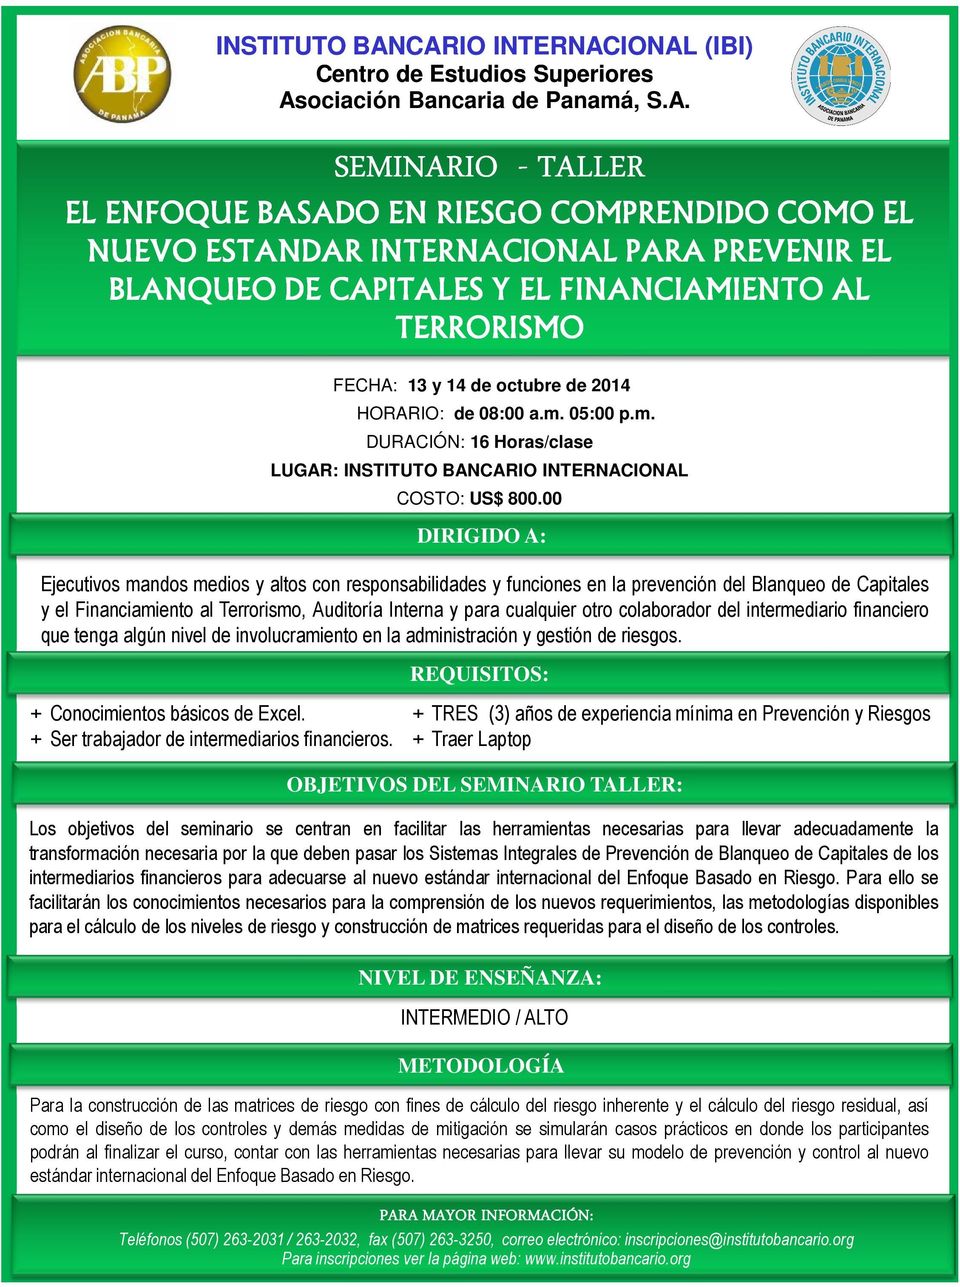 PREVENIR EL BLANQUEO DE CAPITALES Y EL FINANCIAMIENTO AL TERRORISMO FECHA: 13 y 14 de octubre de 2014 HORARIO: de 08:00 a.m. 05:00 p.m. DURACIÓN: 16 Horas/clase LUGAR: CARIO INTERNACIONAL COSTO: US$ 800.